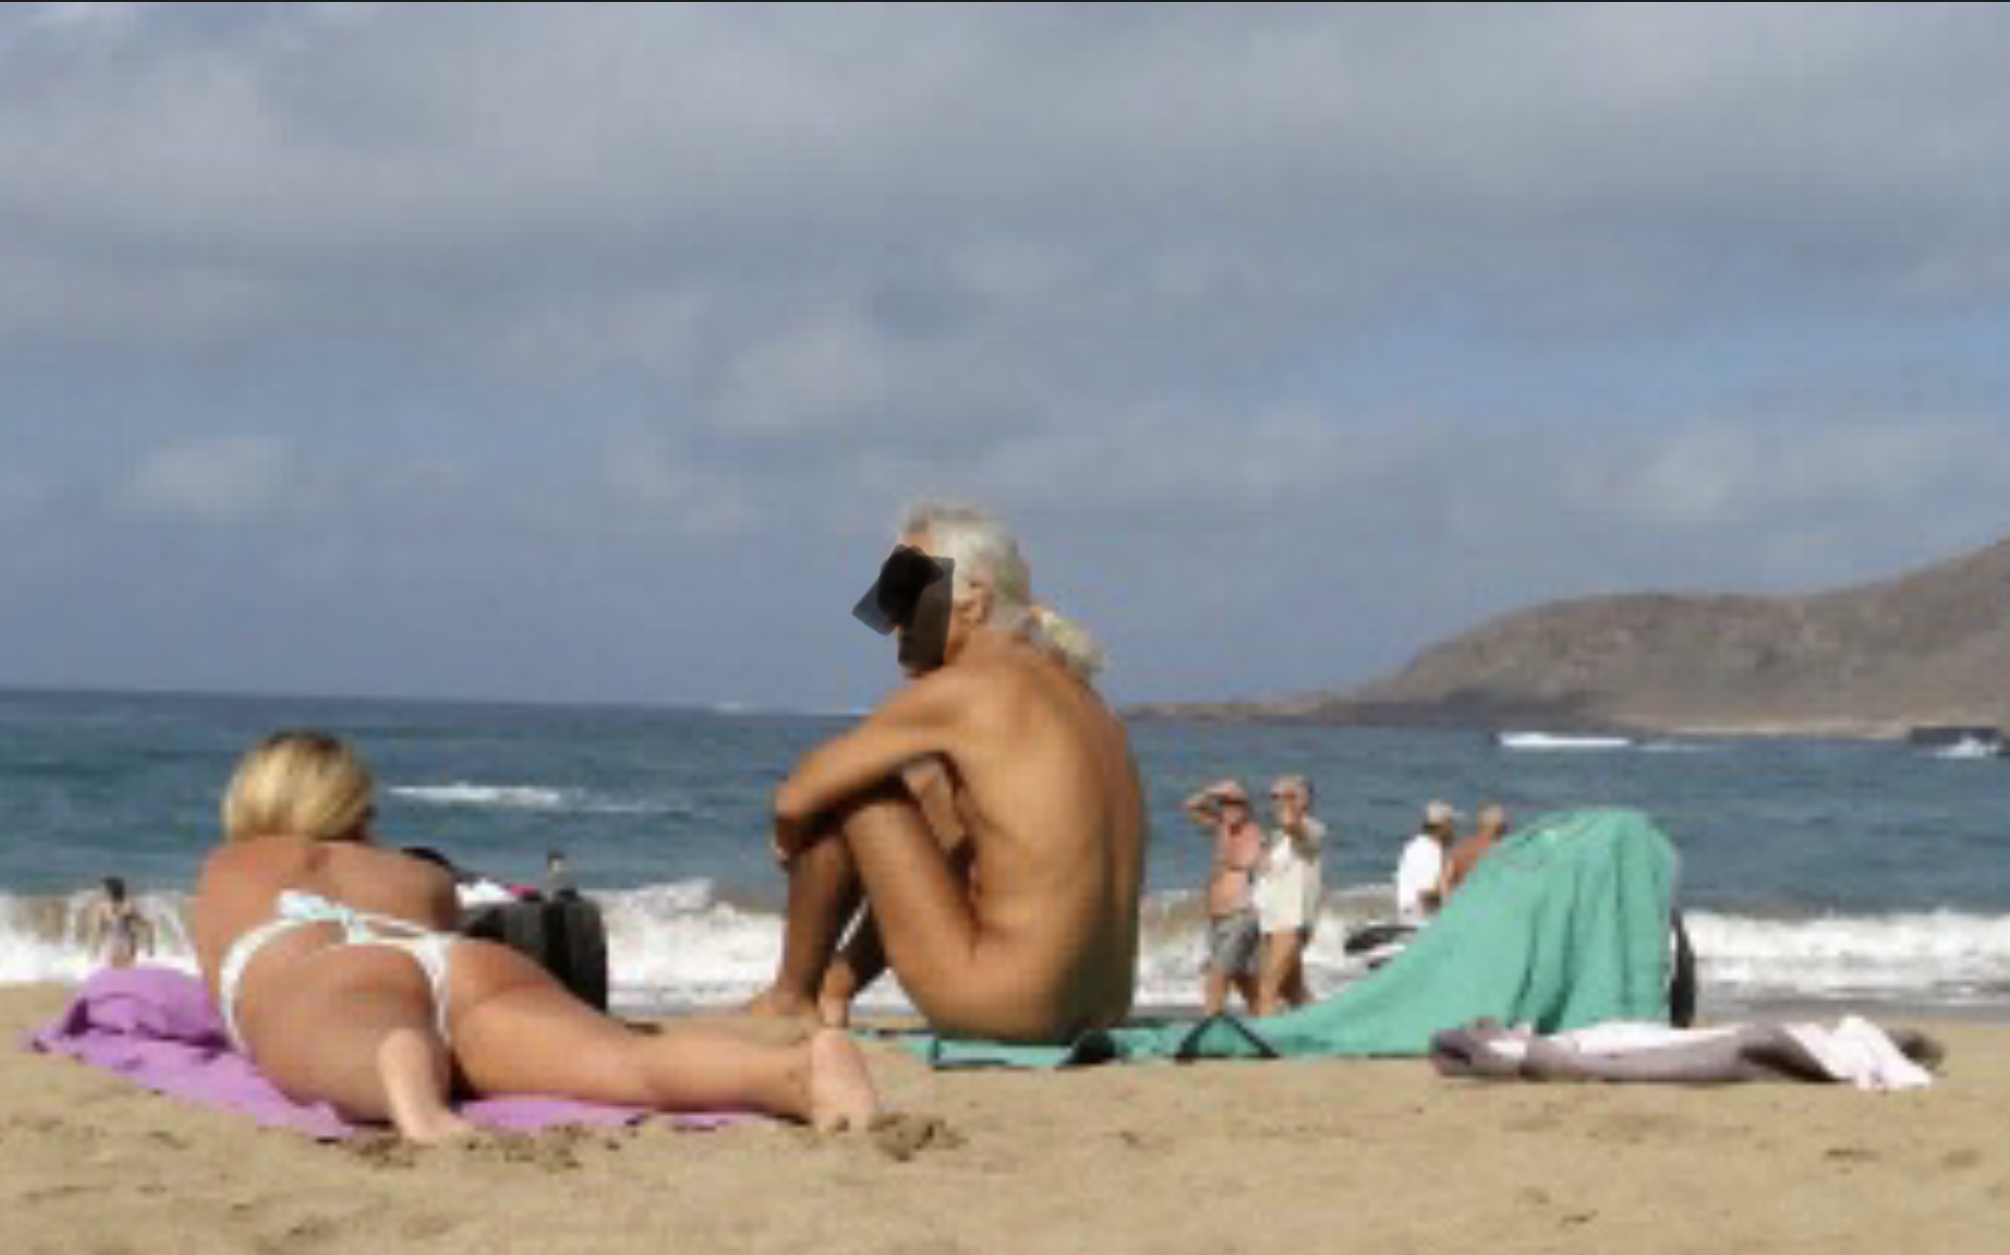 Ordenanza de playas: sobre la práctica del nudismo